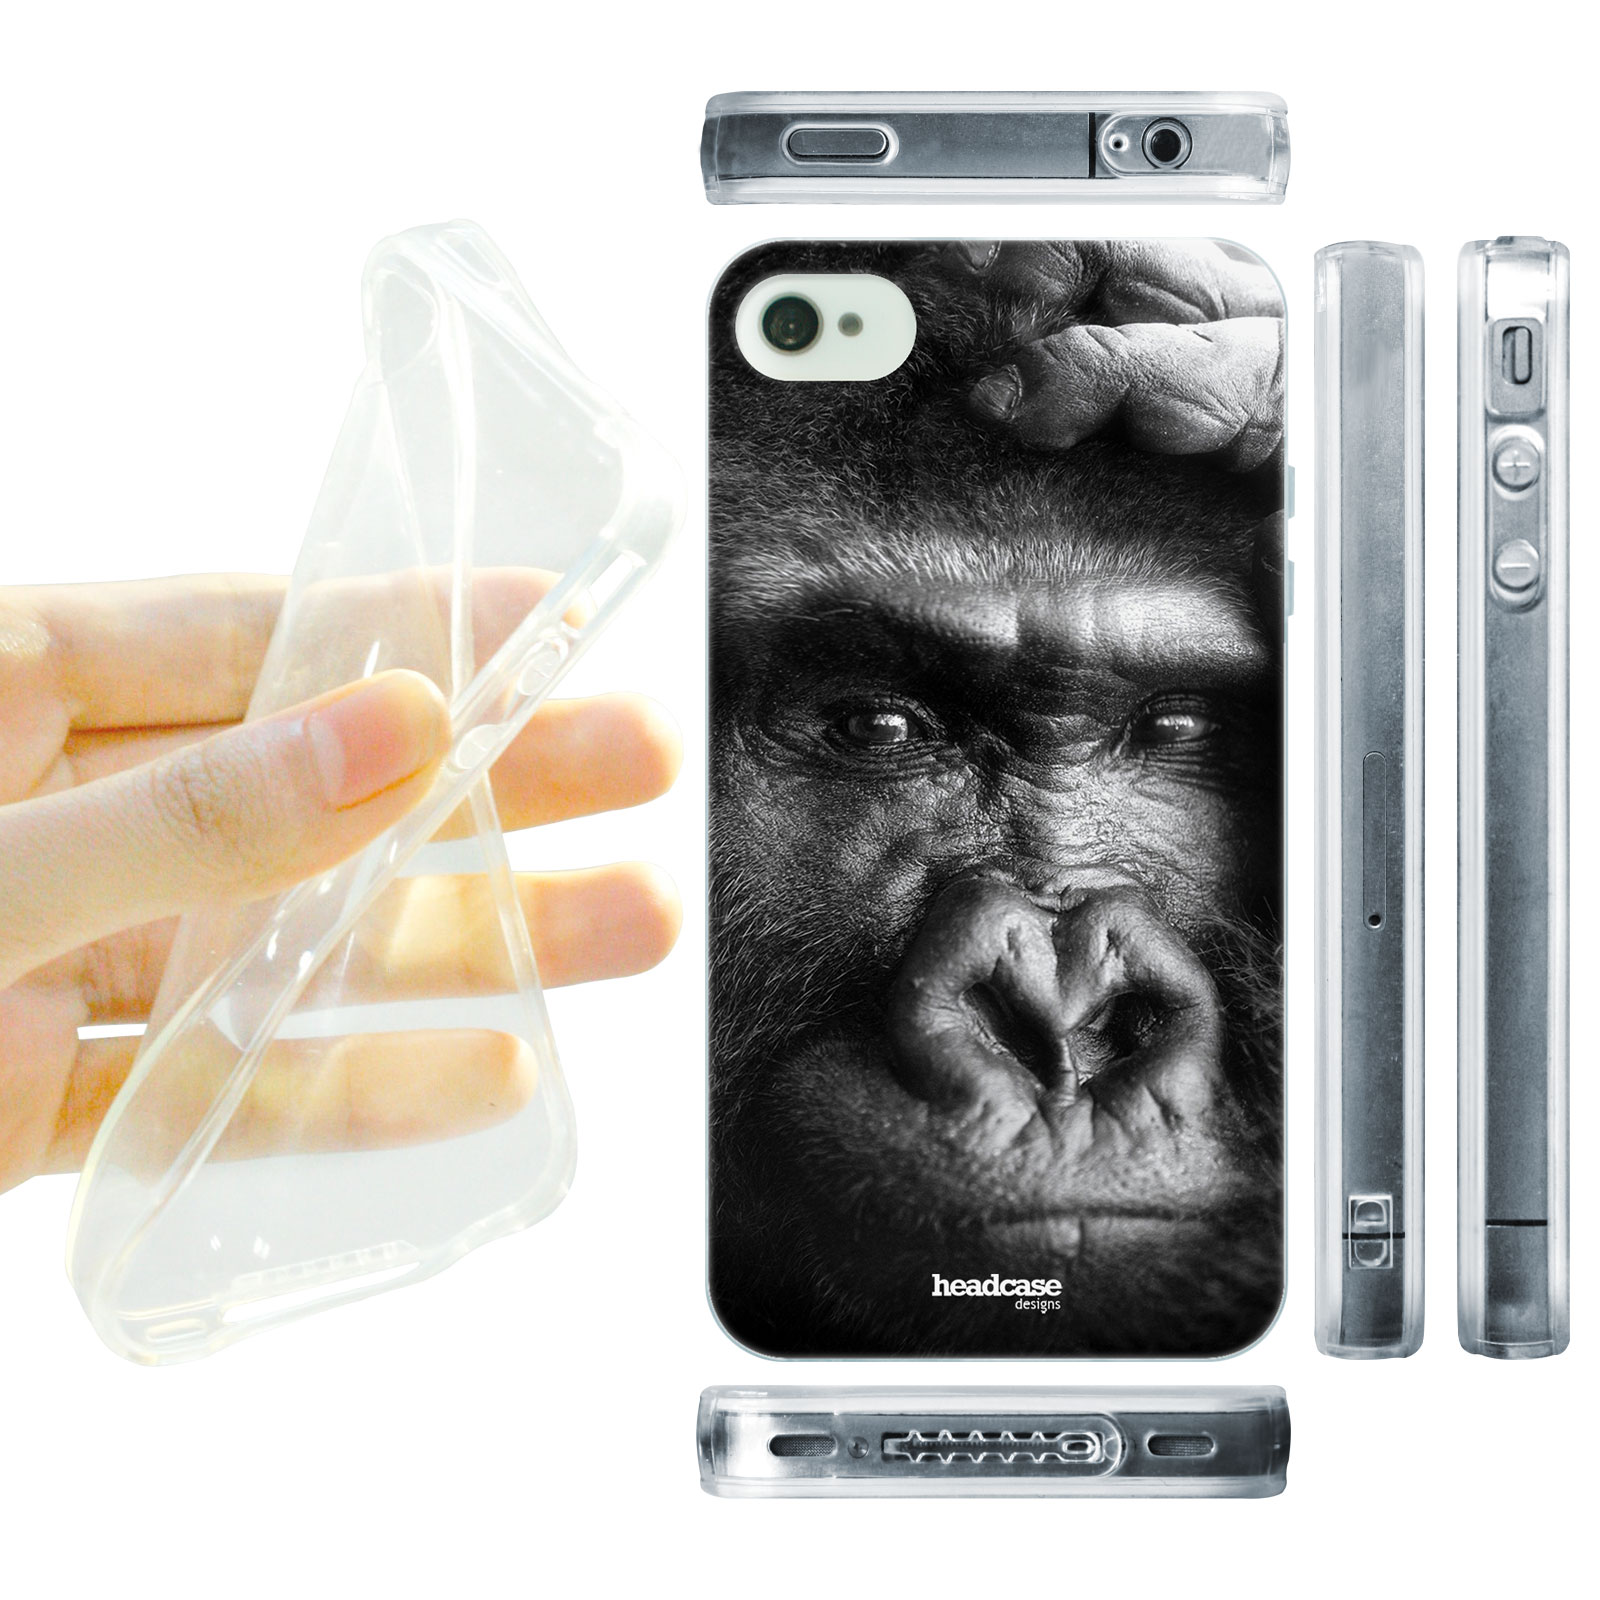 HEAD CASE silikonový obal na mobil Iphone 4/4S divočina černobílá fotka Gorila tvář